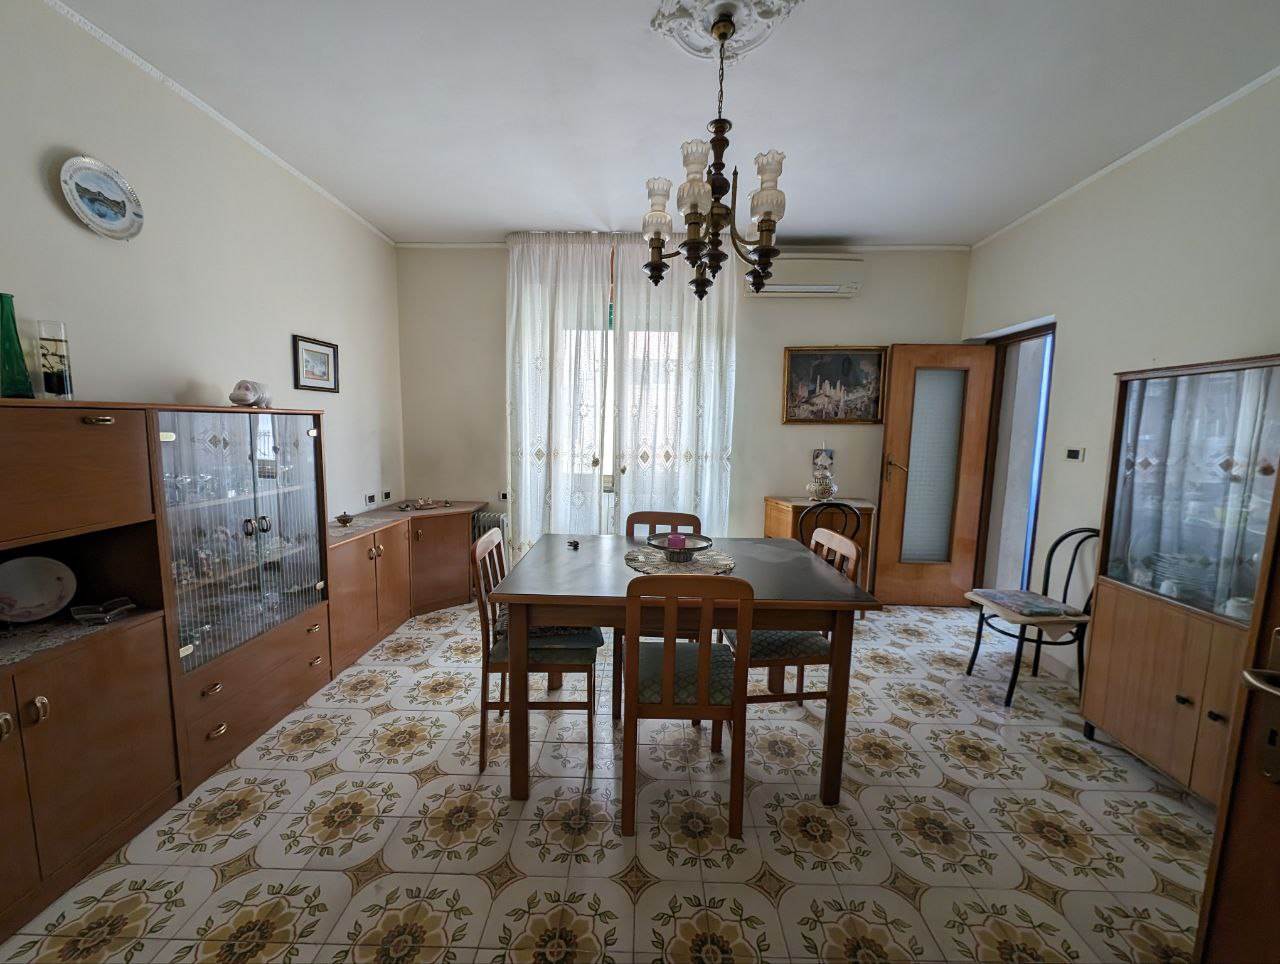 Appartamento in vendita a San Severo, 3 locali, prezzo € 45.000 | PortaleAgenzieImmobiliari.it